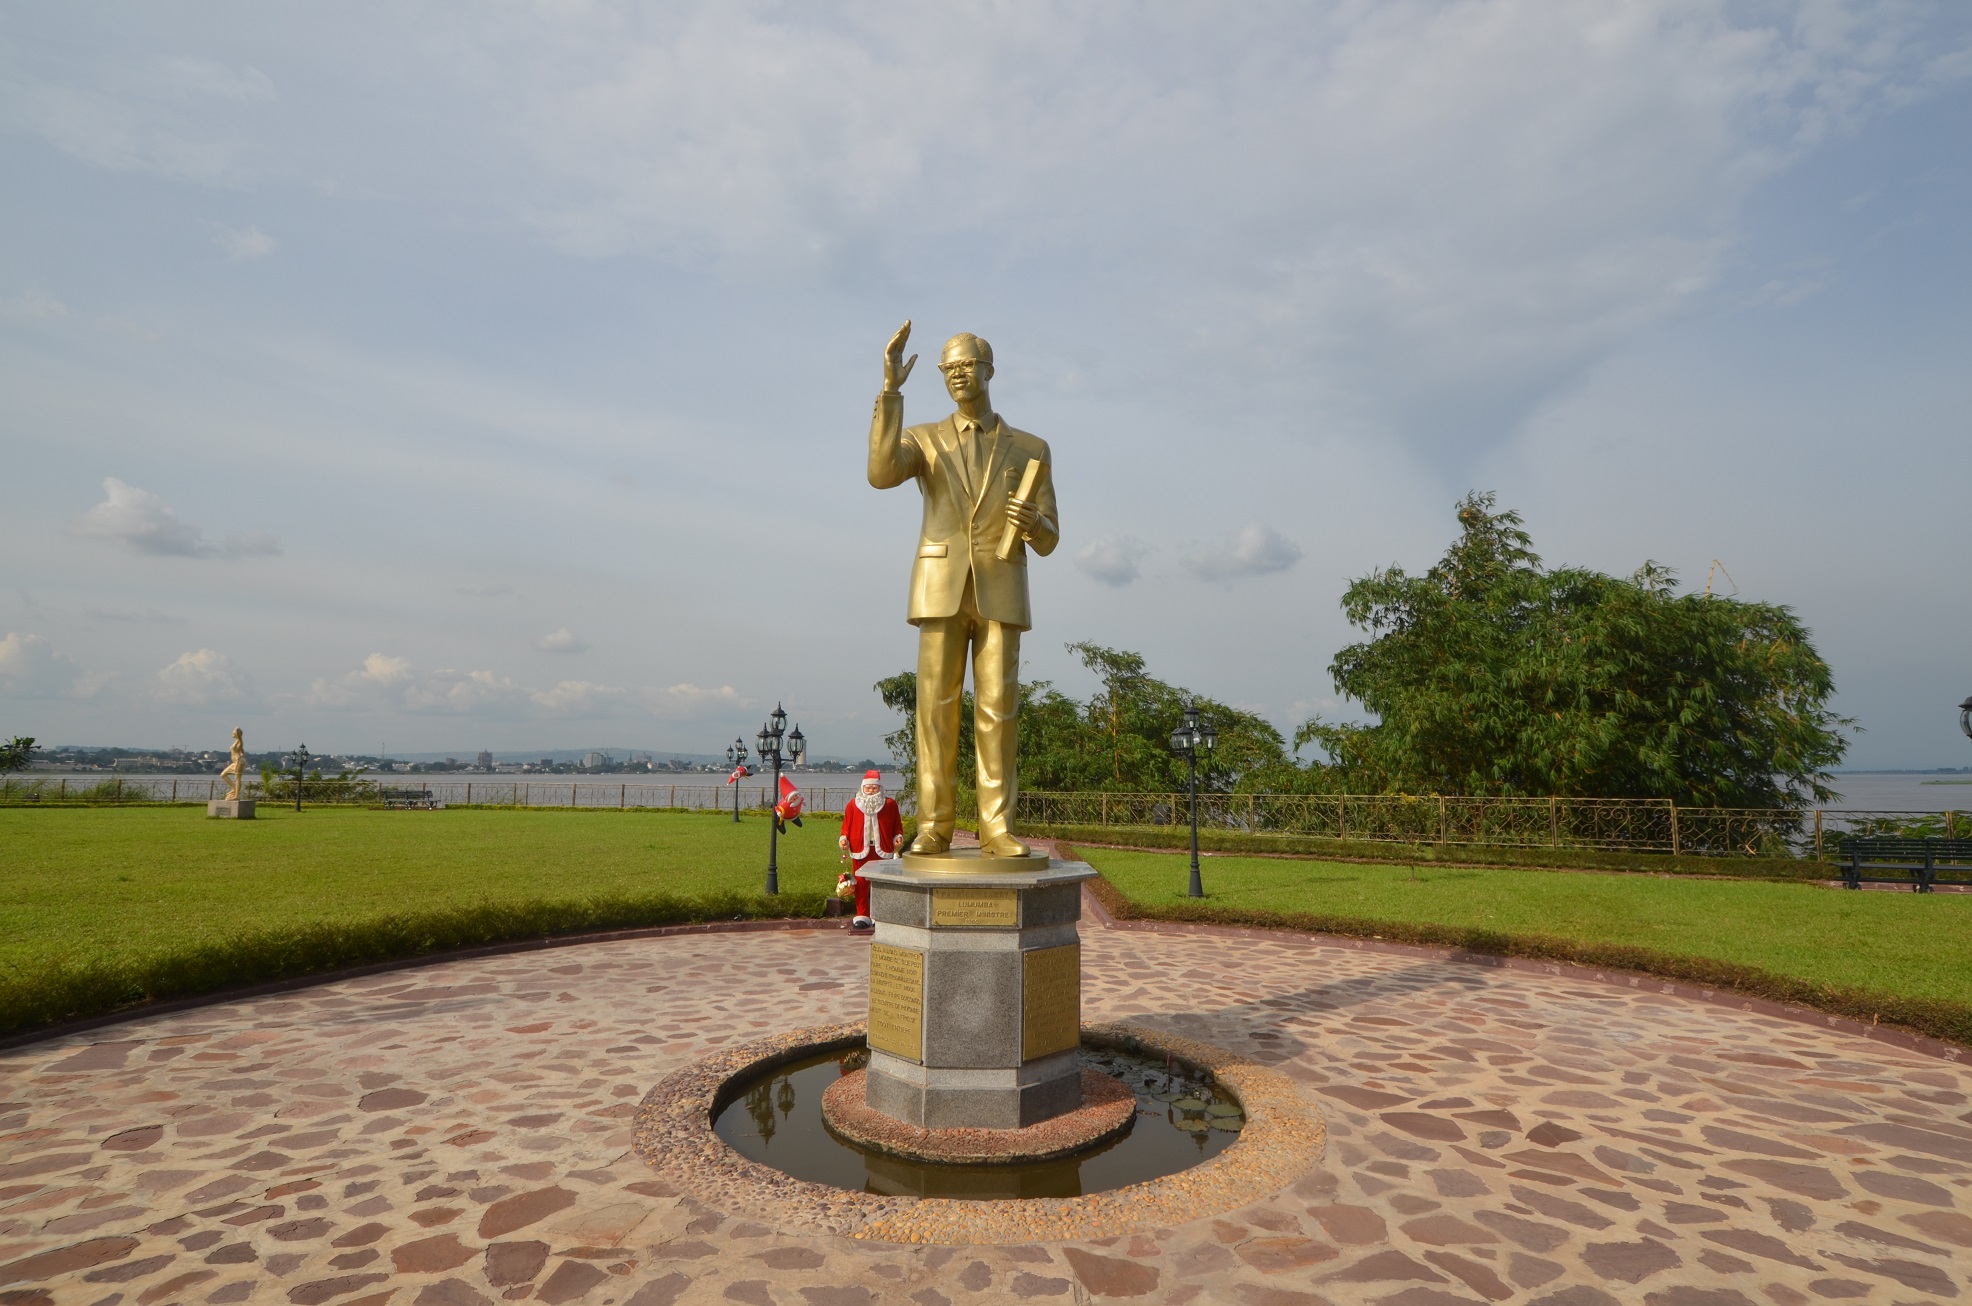 La statue de Lumumba dans le jardin de sa résidence sur la rive du Congo. Crédit photo : GW